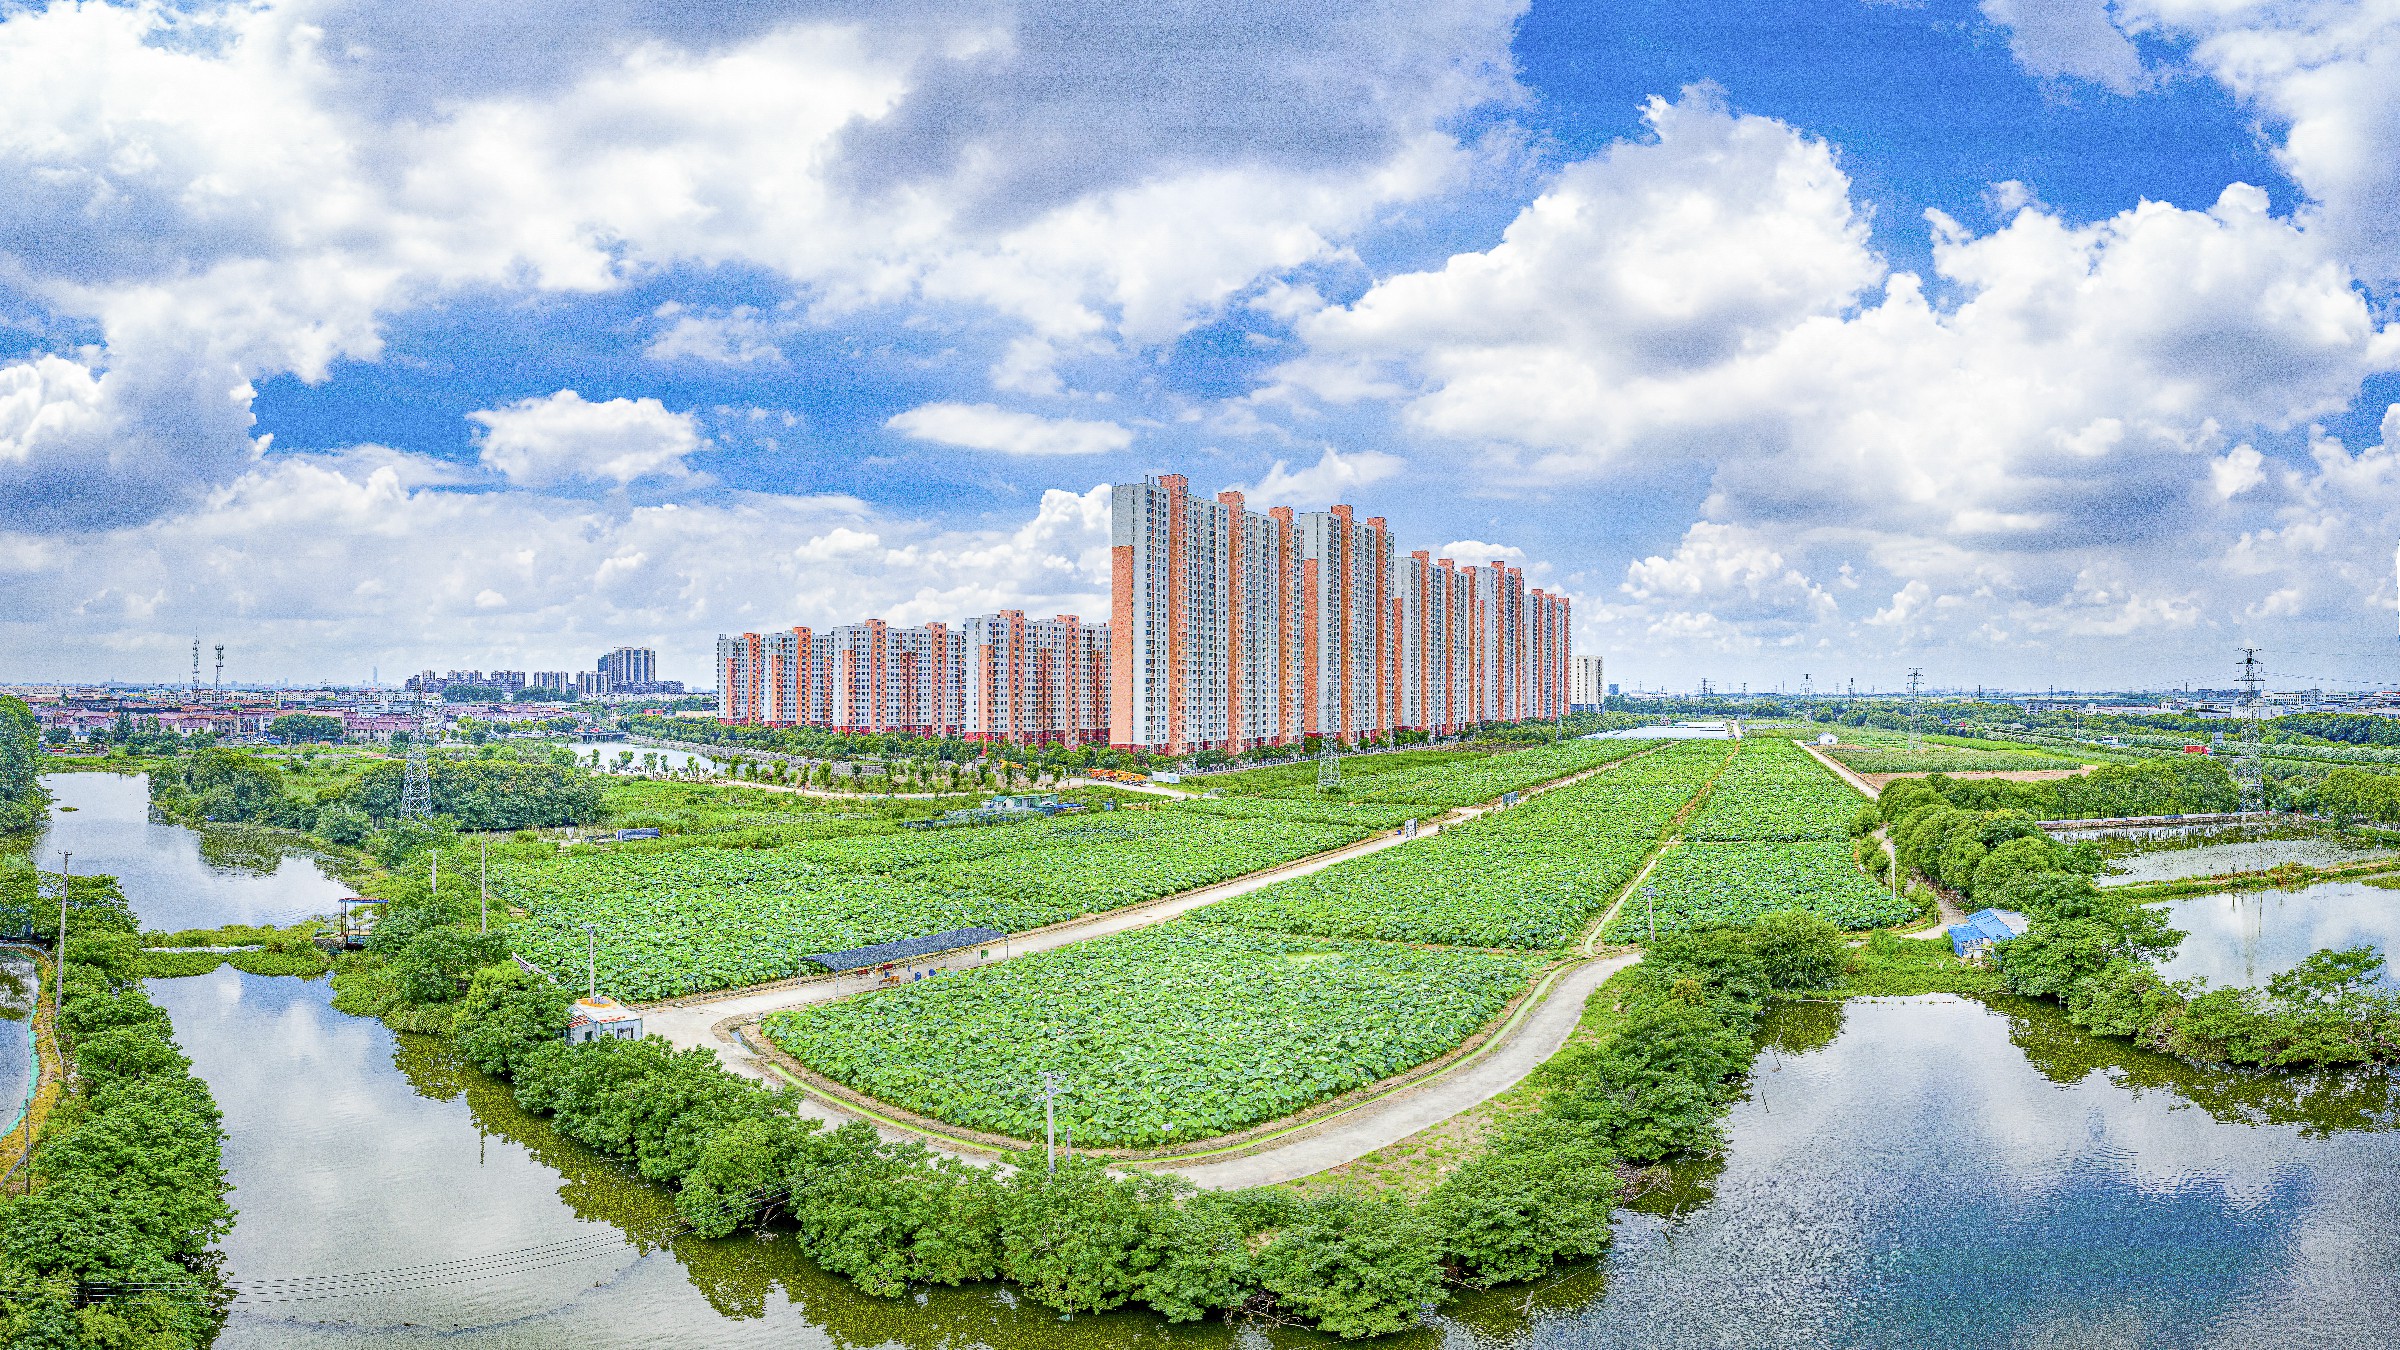 阳澄湖镇的帮扶项目太空莲基地及动迁小区，俨然一个生态家园